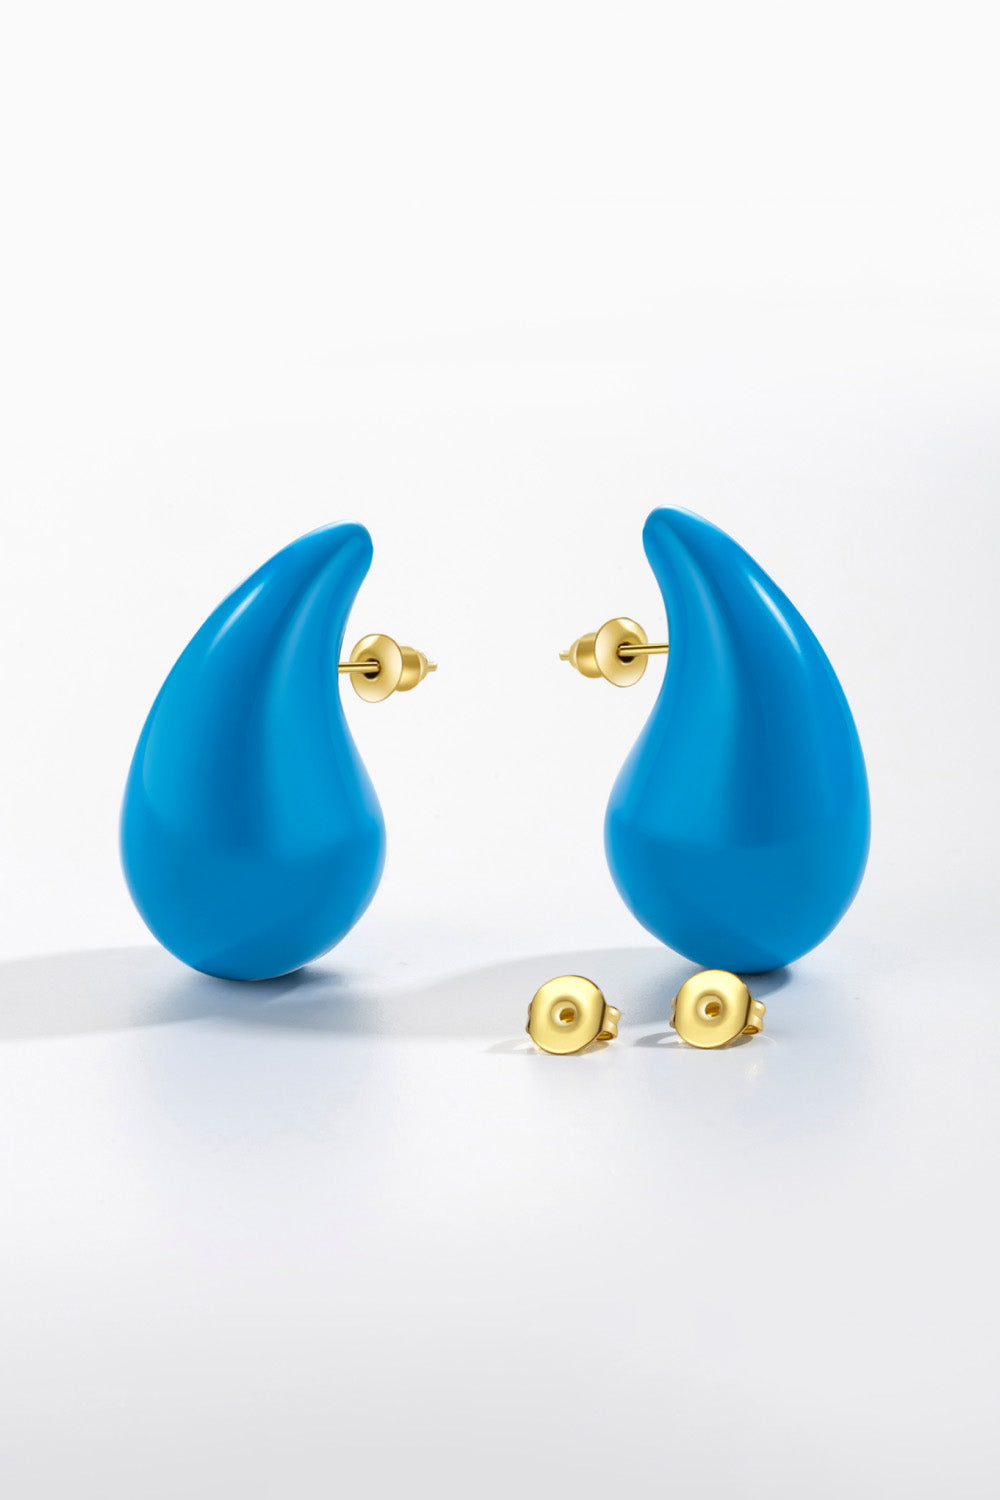 Big Size Water Drop Earrings | AdoreStarr